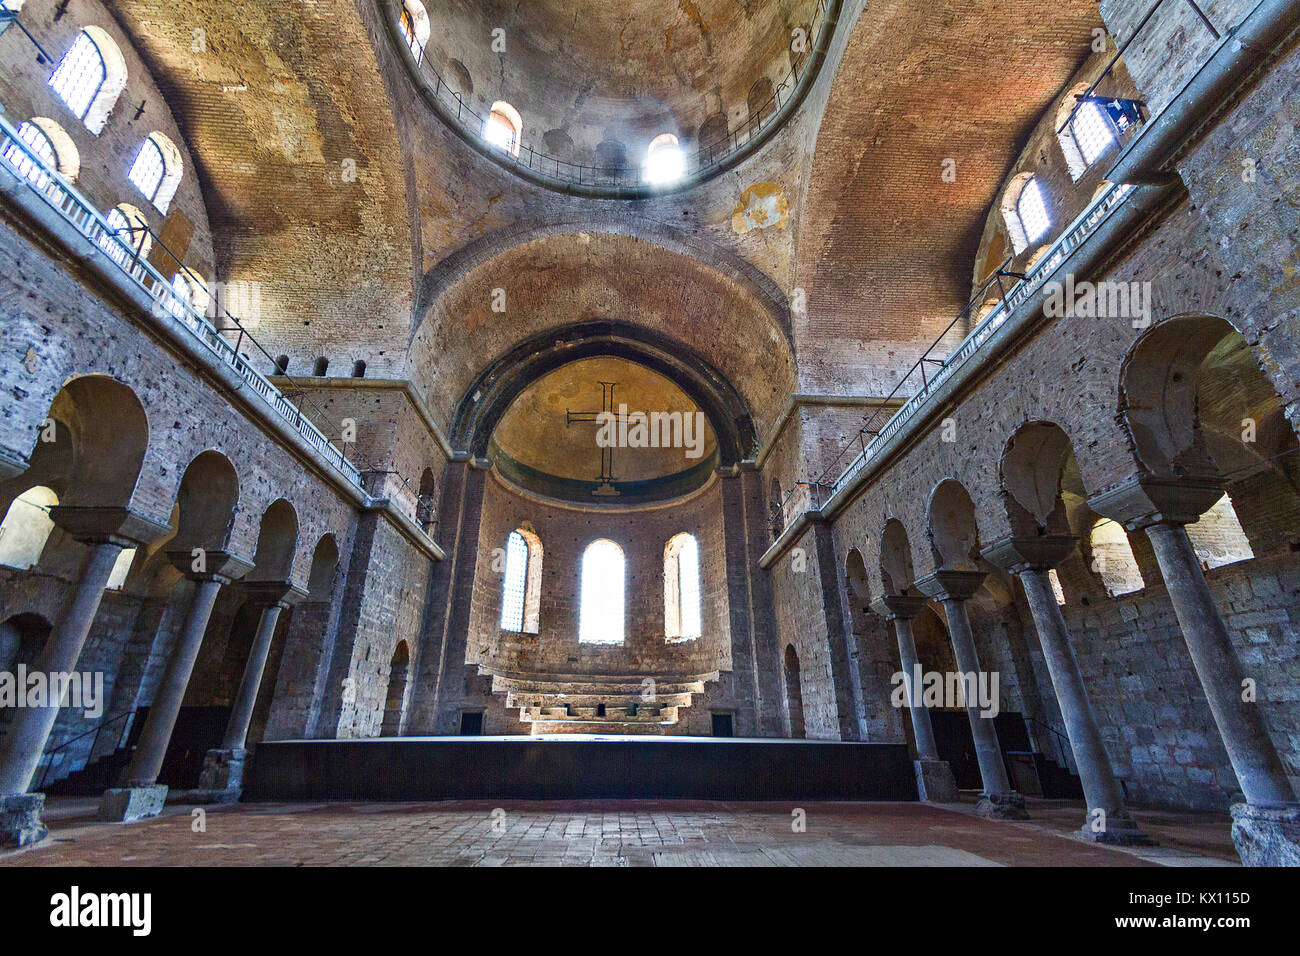 Interno della chiesa bizantina di Hagia Irene, noto anche come Aya Irini, ad Istanbul in Turchia. Foto Stock